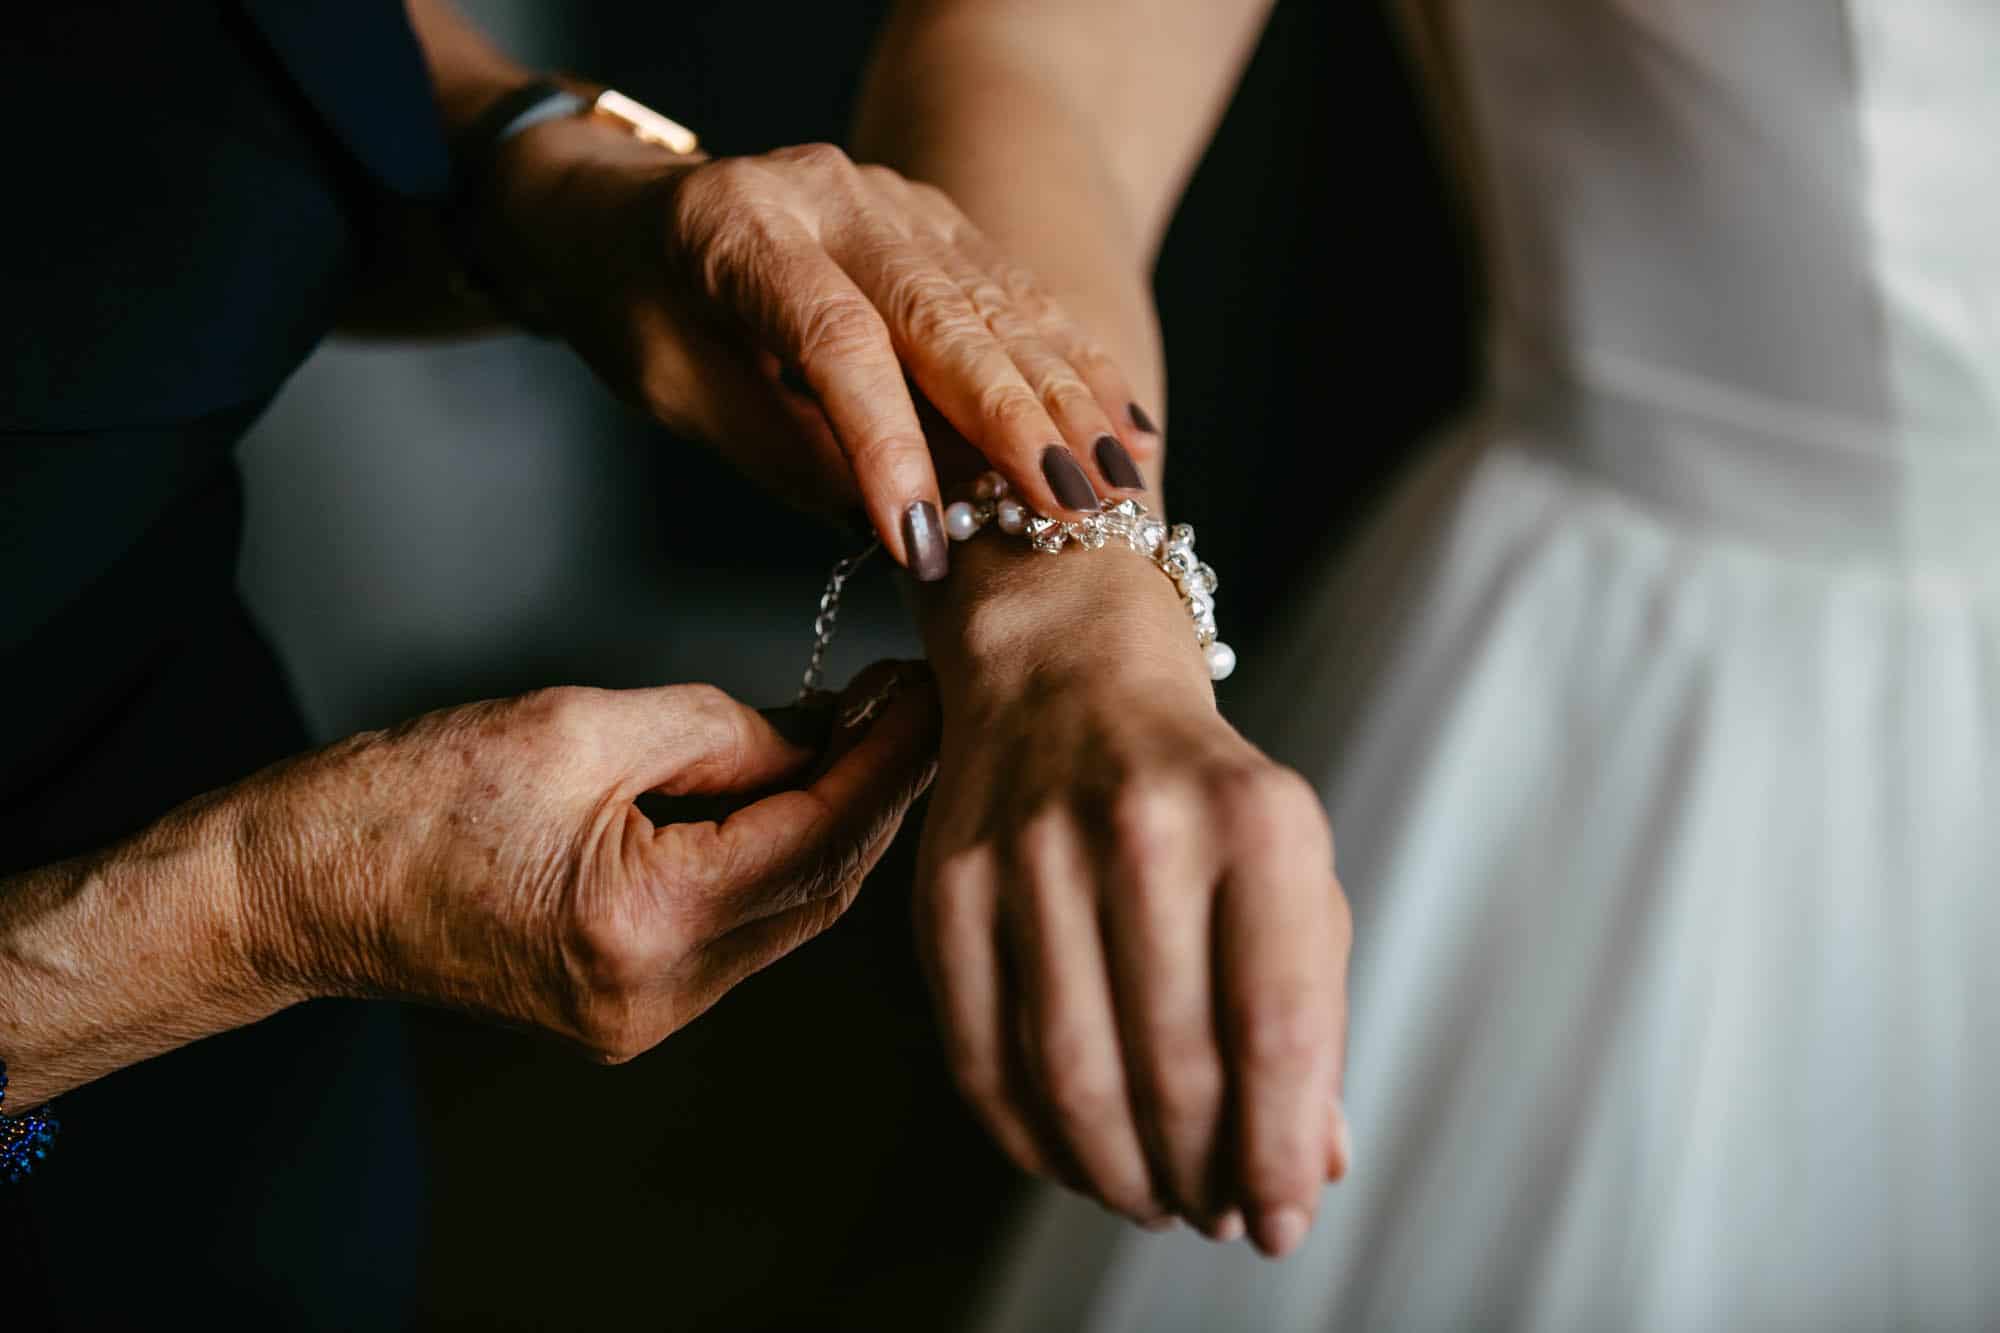 A woman puts on a wedding bracelet.